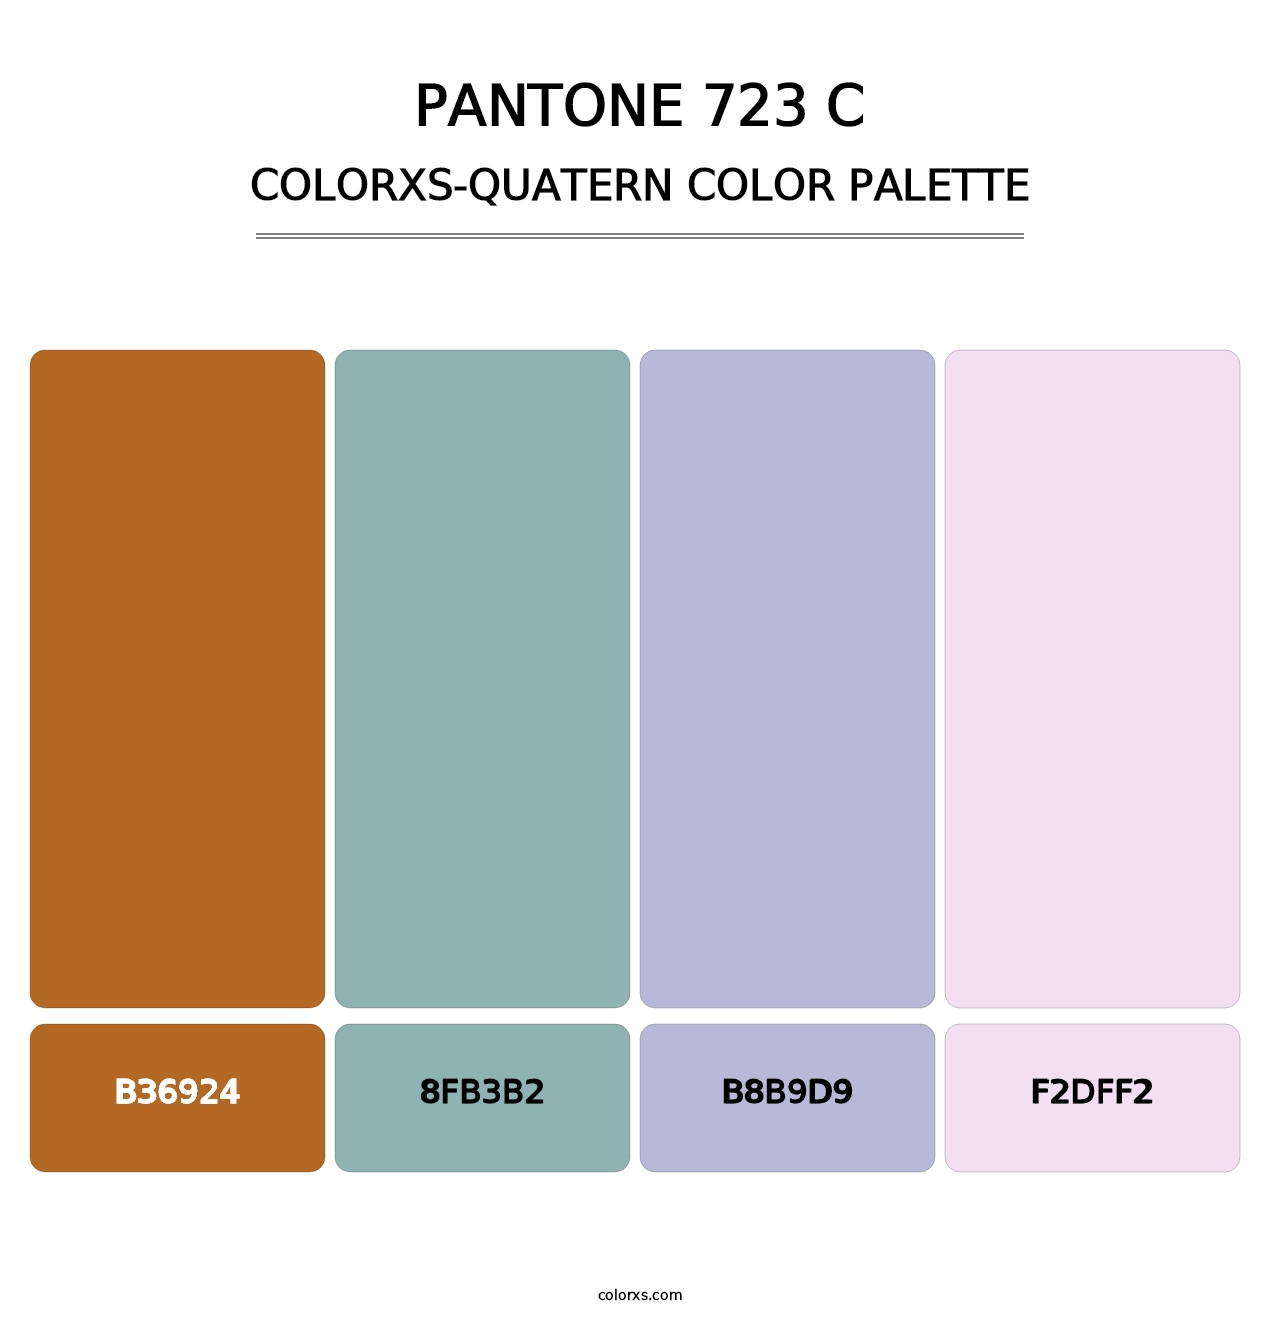 PANTONE 723 C - Colorxs Quatern Palette